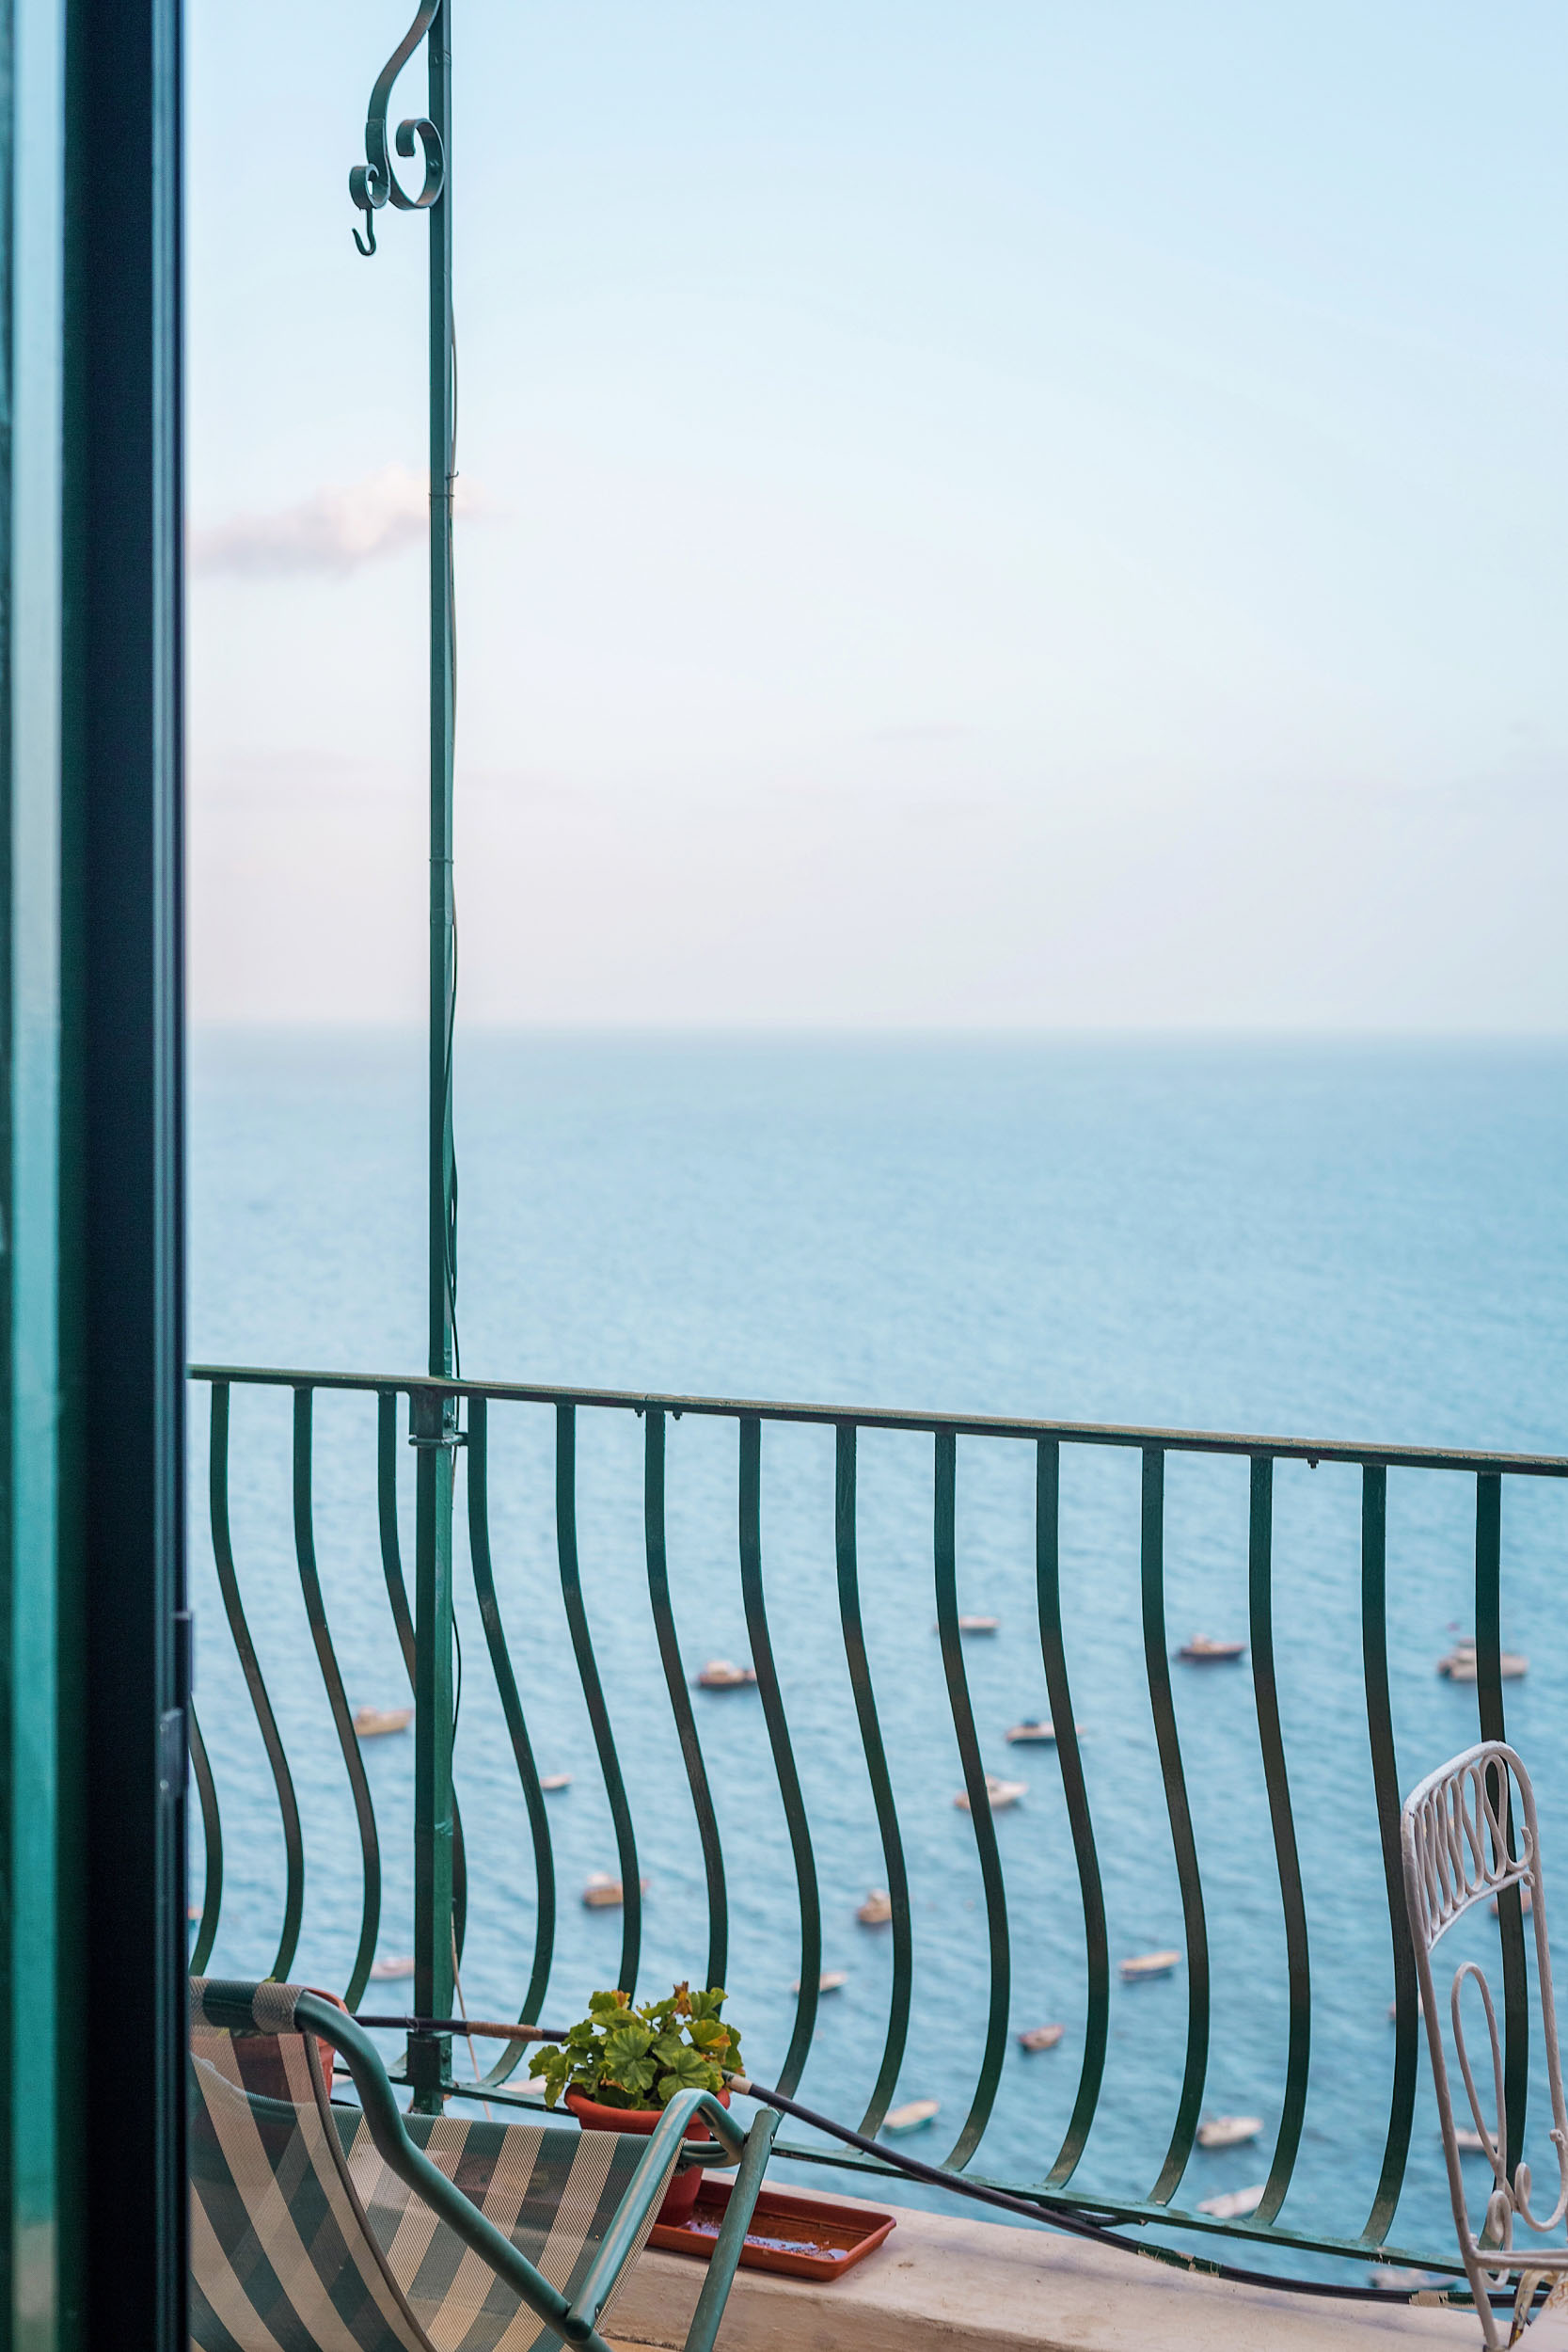 A hotel room balcony in Positano, Amalfi Coast, Italy